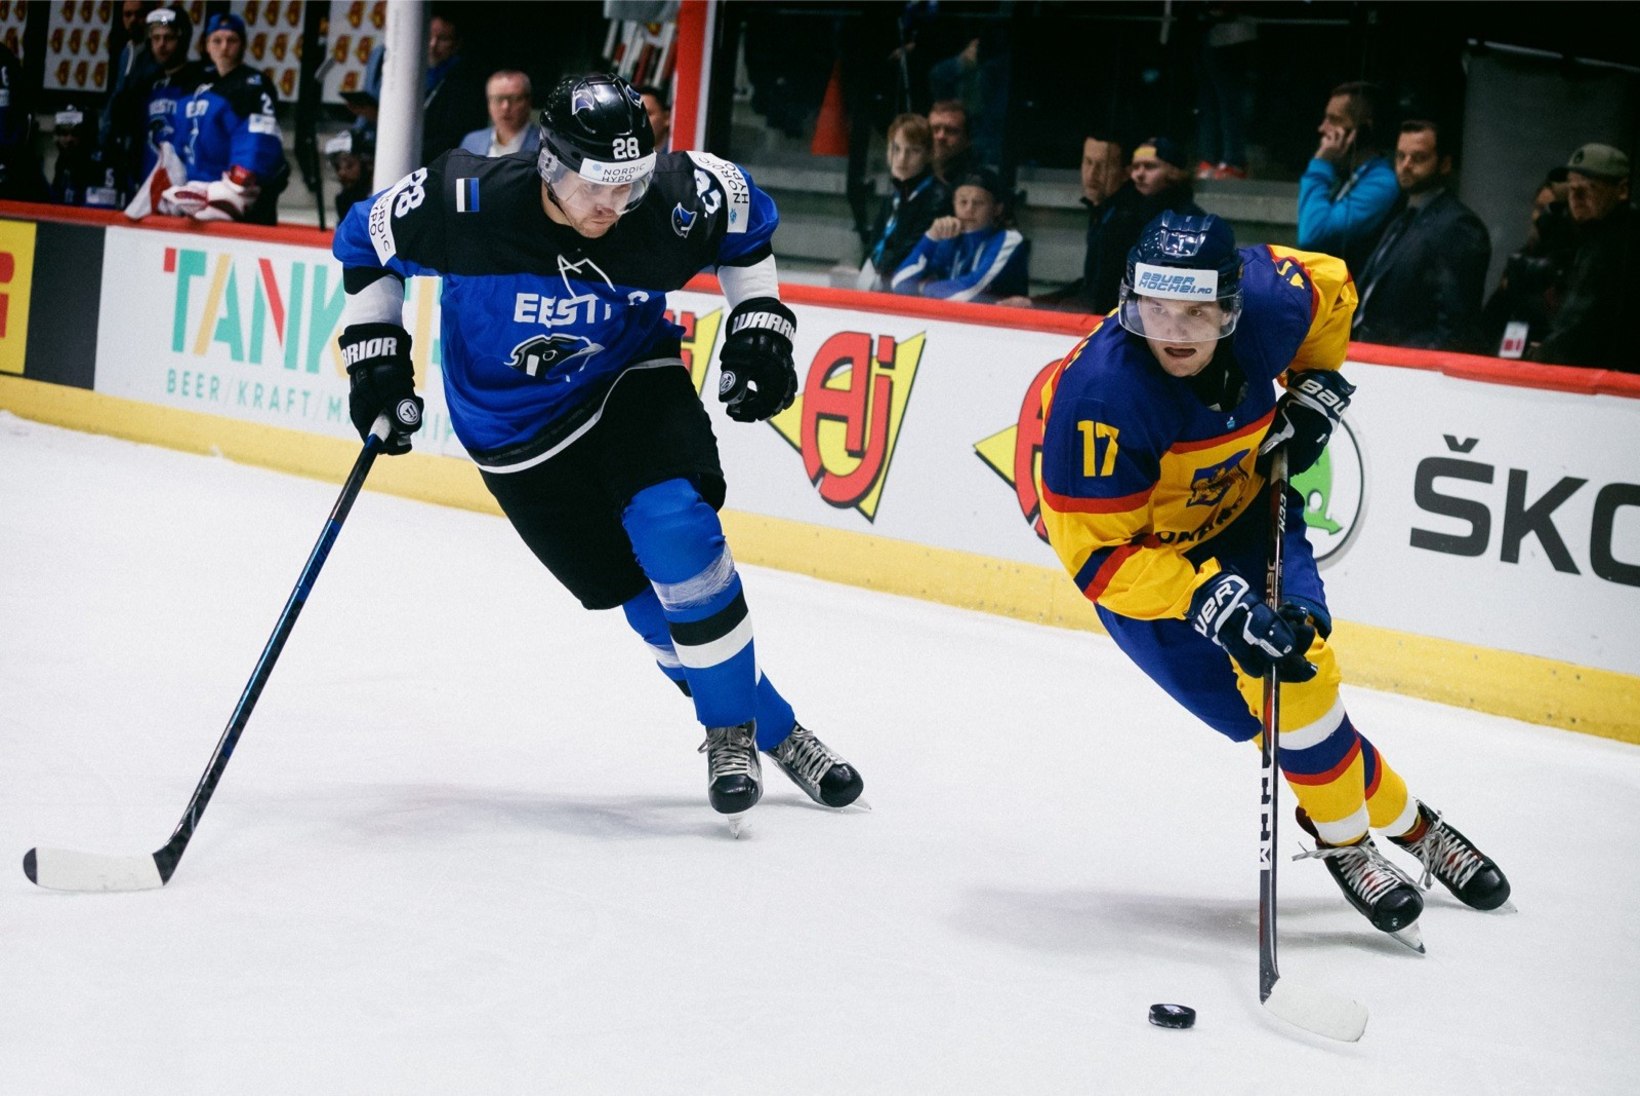 FOTOD | Eesti jäähokikoondis alustas kodust MM-turniiri kaotusega